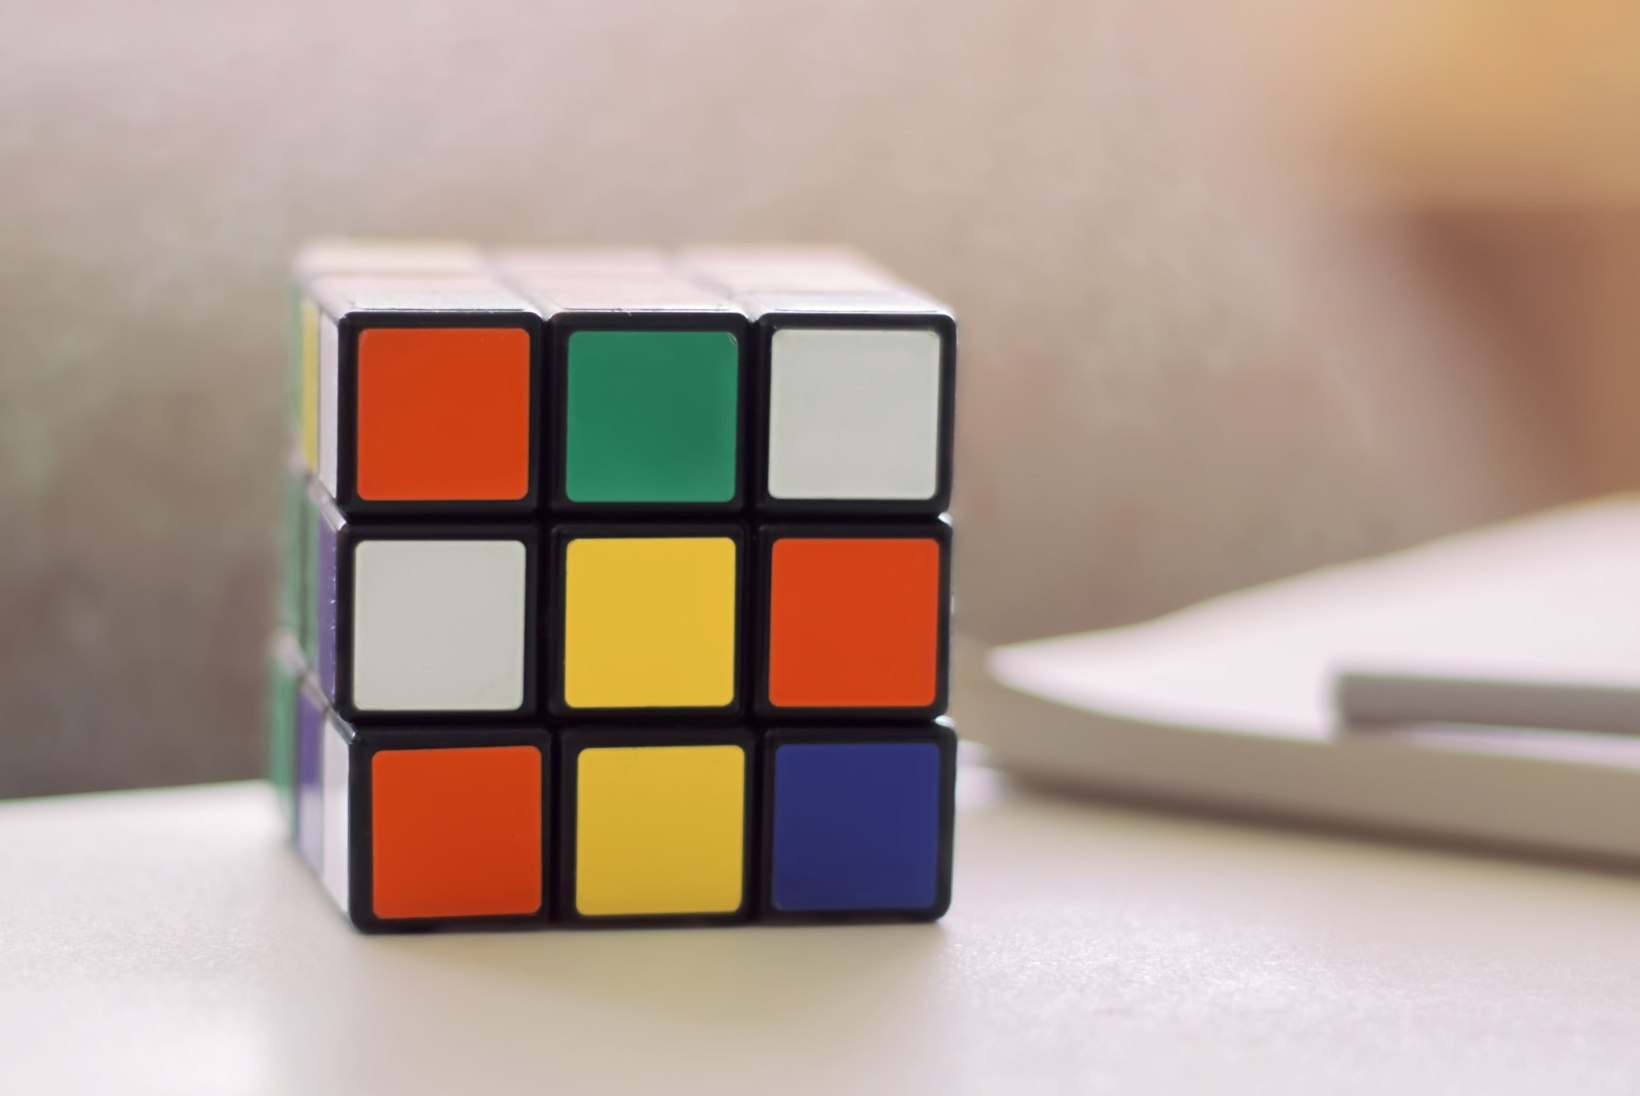 RAHA PÖÖNINGUL | Kas legendaarse Rubiku kuubiku müük täidab taskud rahaga?